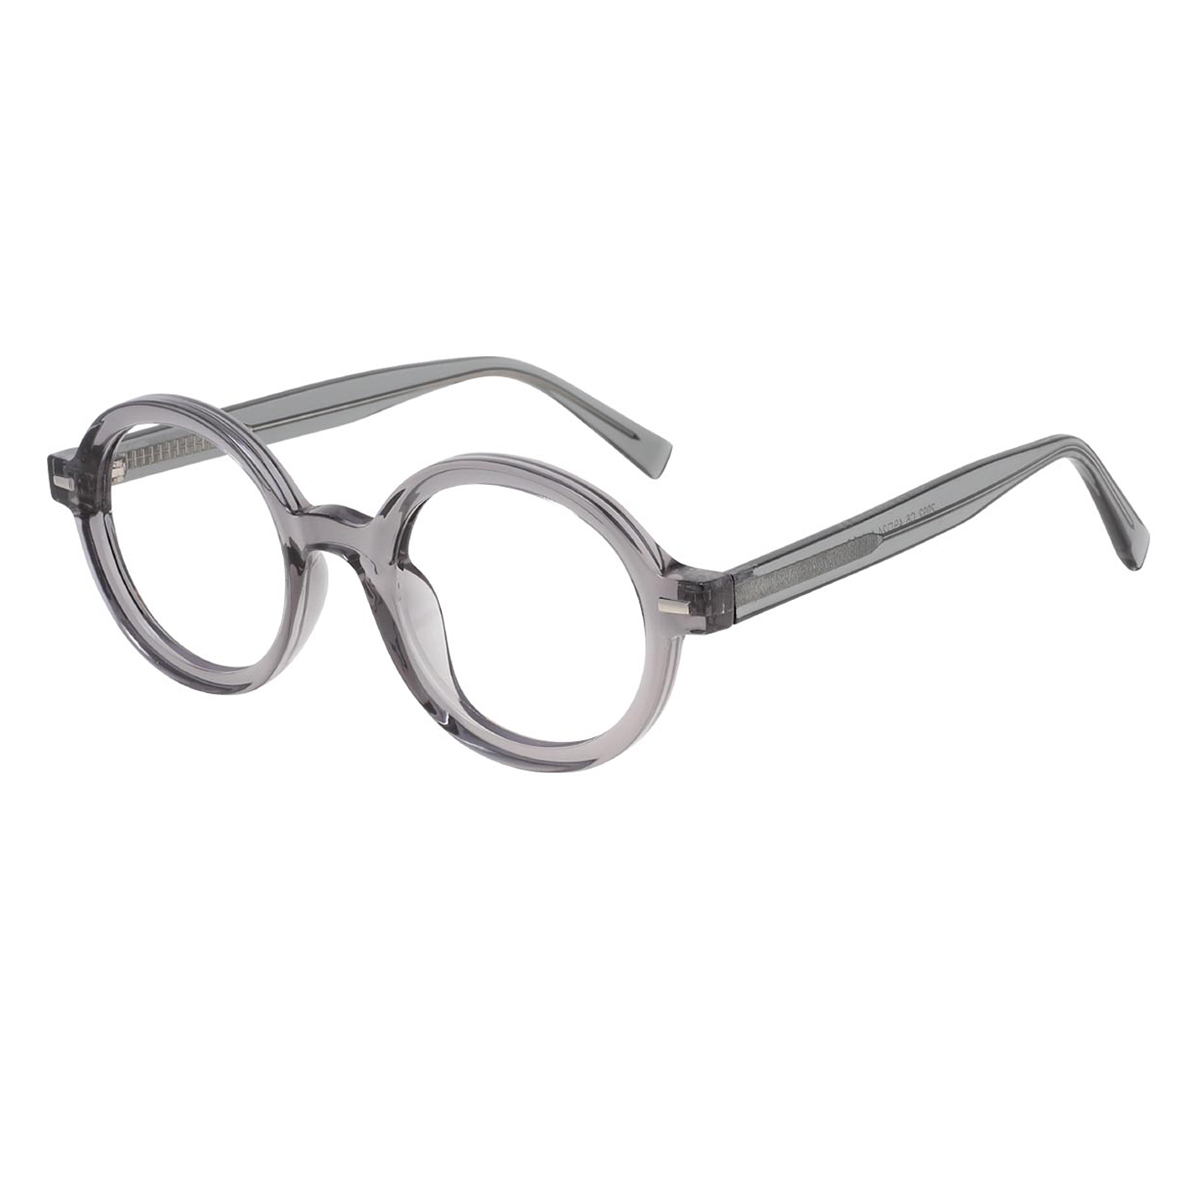 Ashplant - Round Gray Reading Glasses for Men & Women